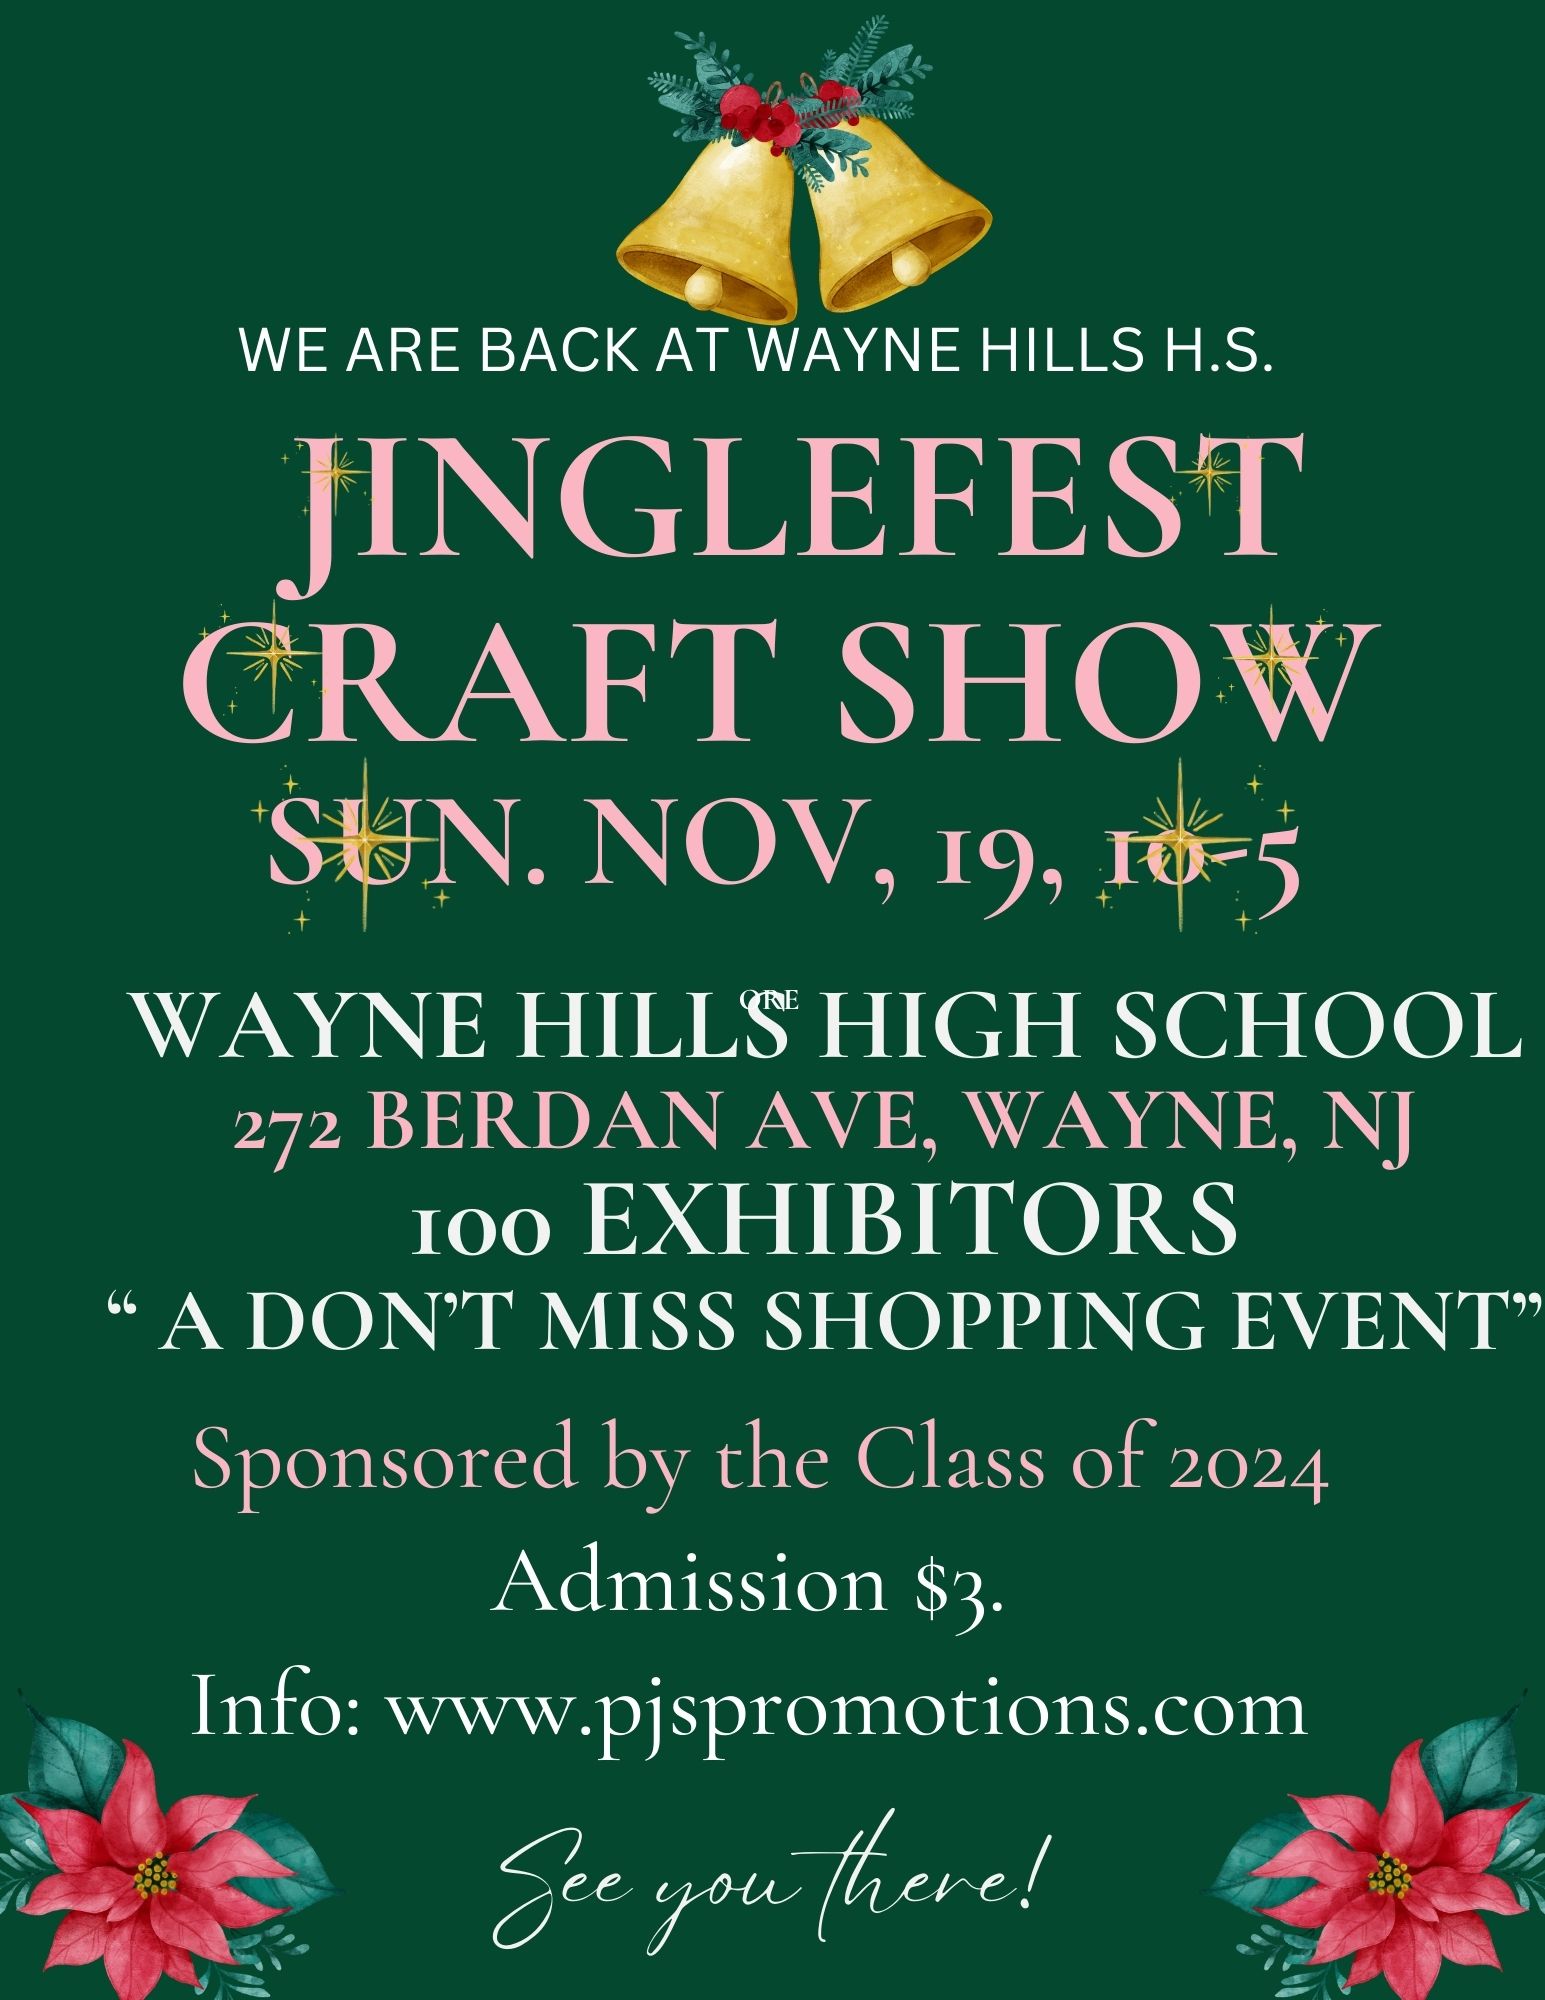 JingleFest Craft Show